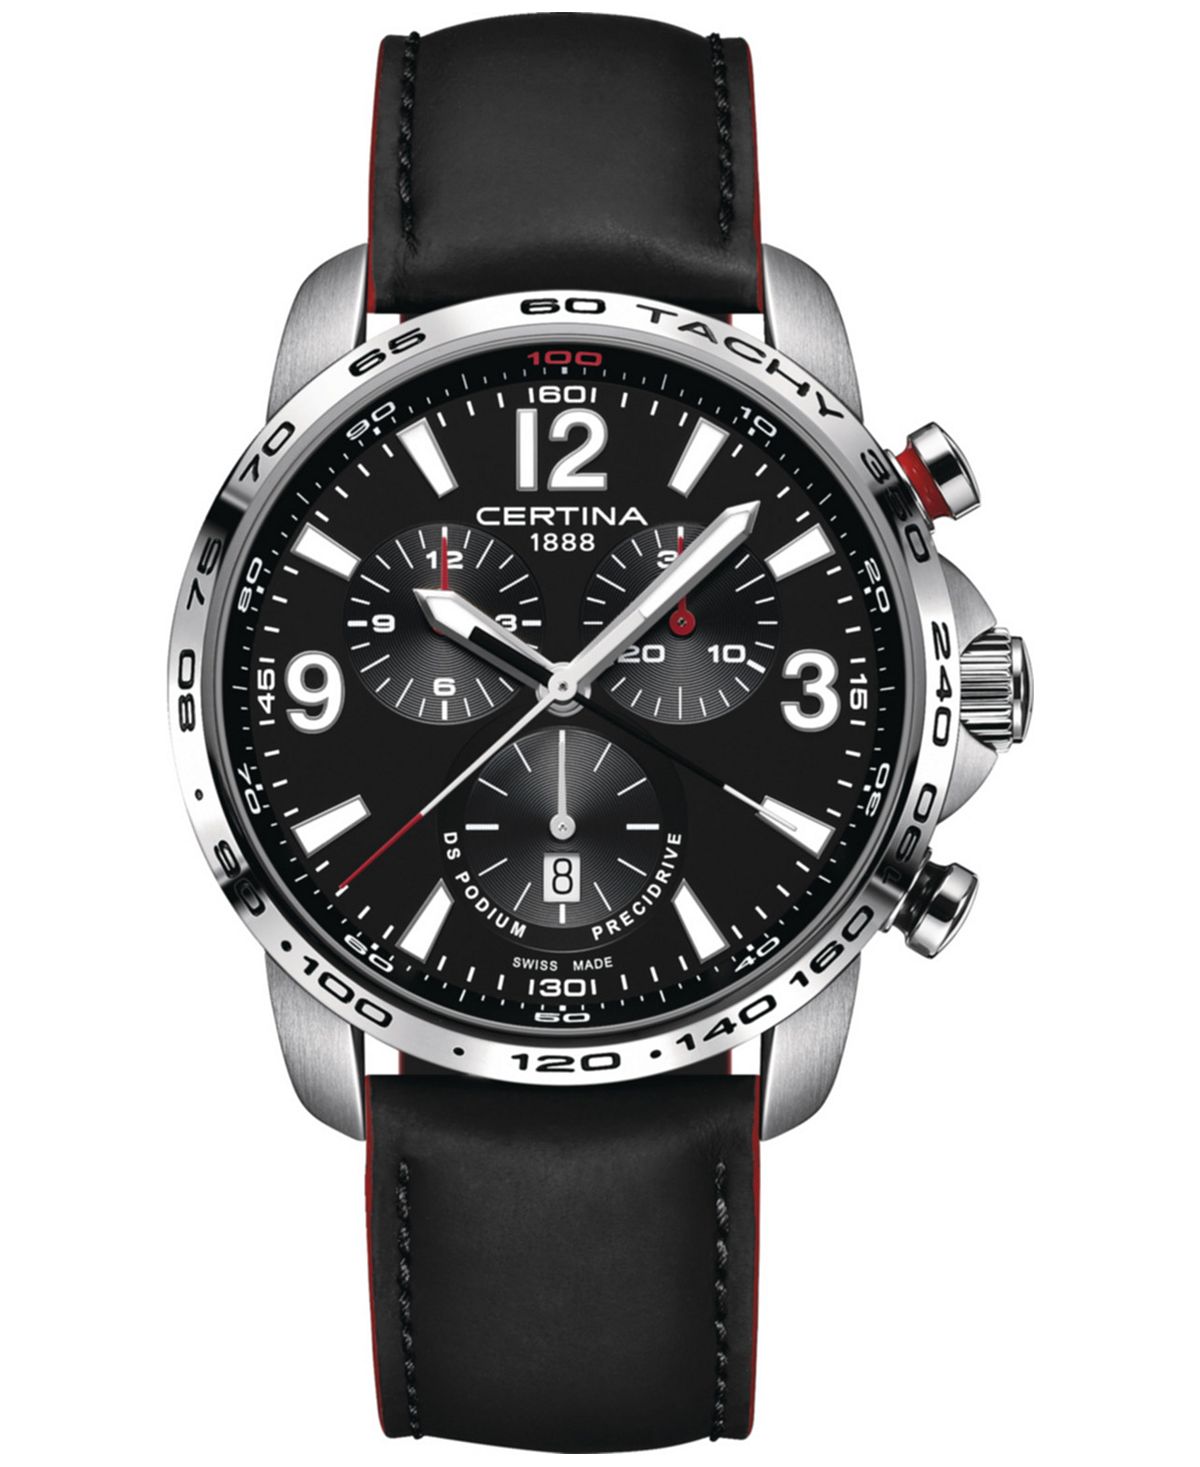 Мужские швейцарские часы с хронографом DS Podium, черный кожаный ремешок, 44 мм Certina certina certina ds podium chronograph 1 10 sec c0344171109700